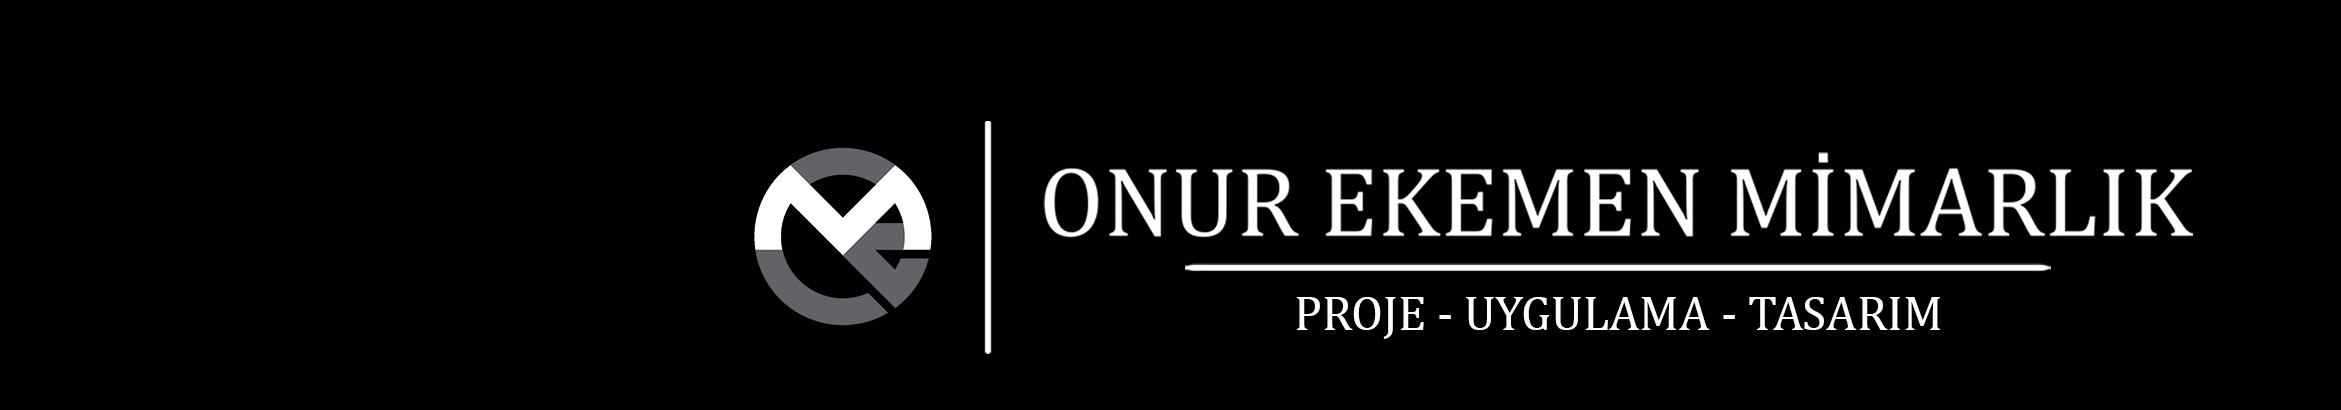 Onur Ekemen Mimarlık's profile banner